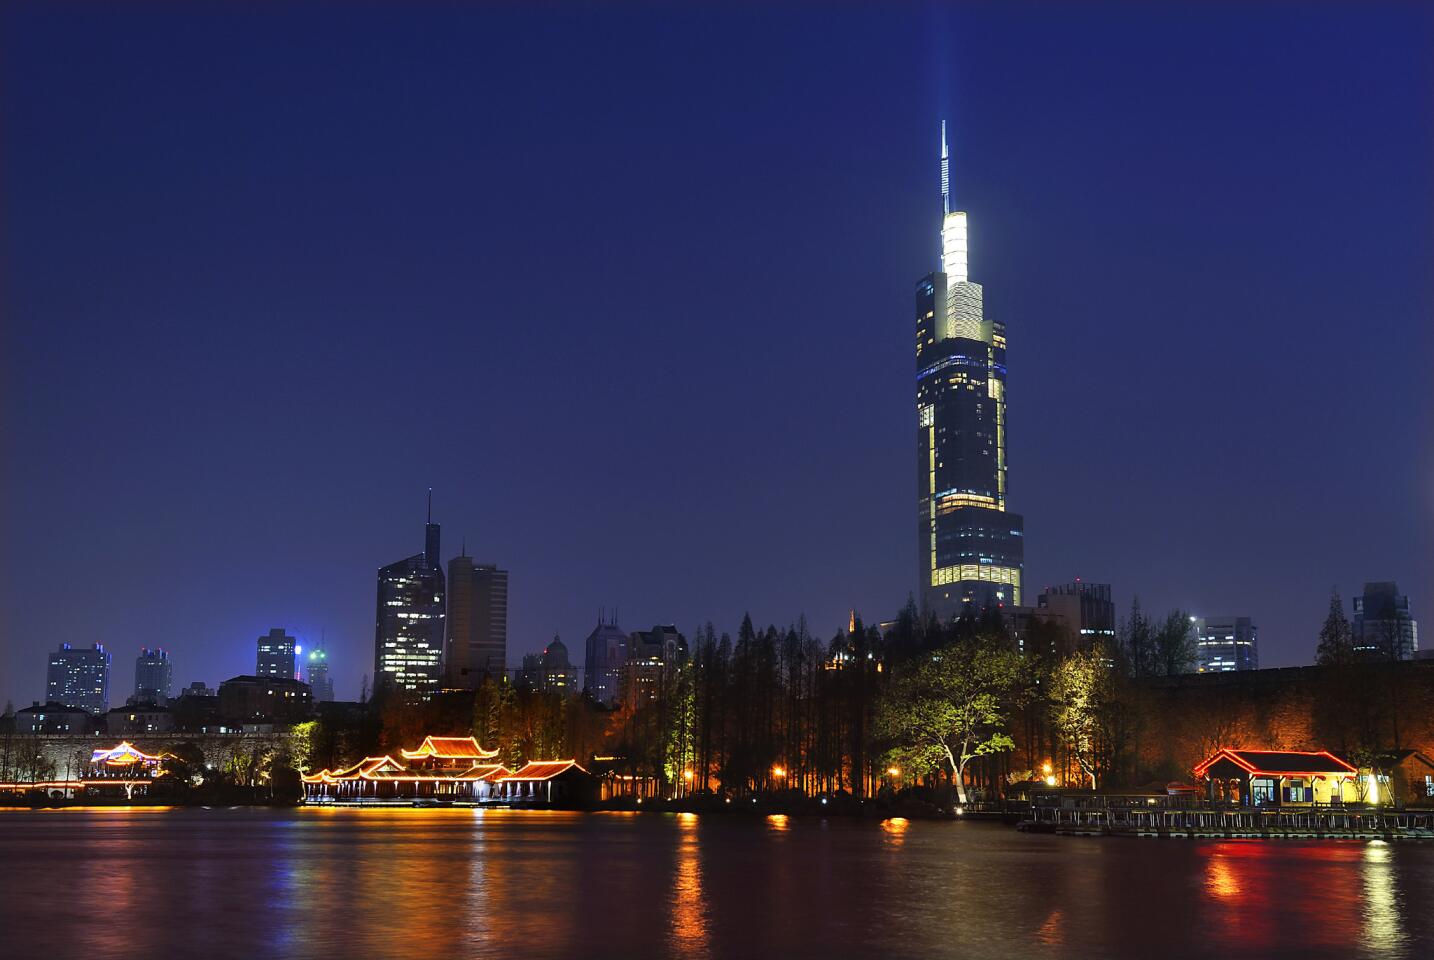 13. Zifeng Tower, Nanjing (1,476 feet)